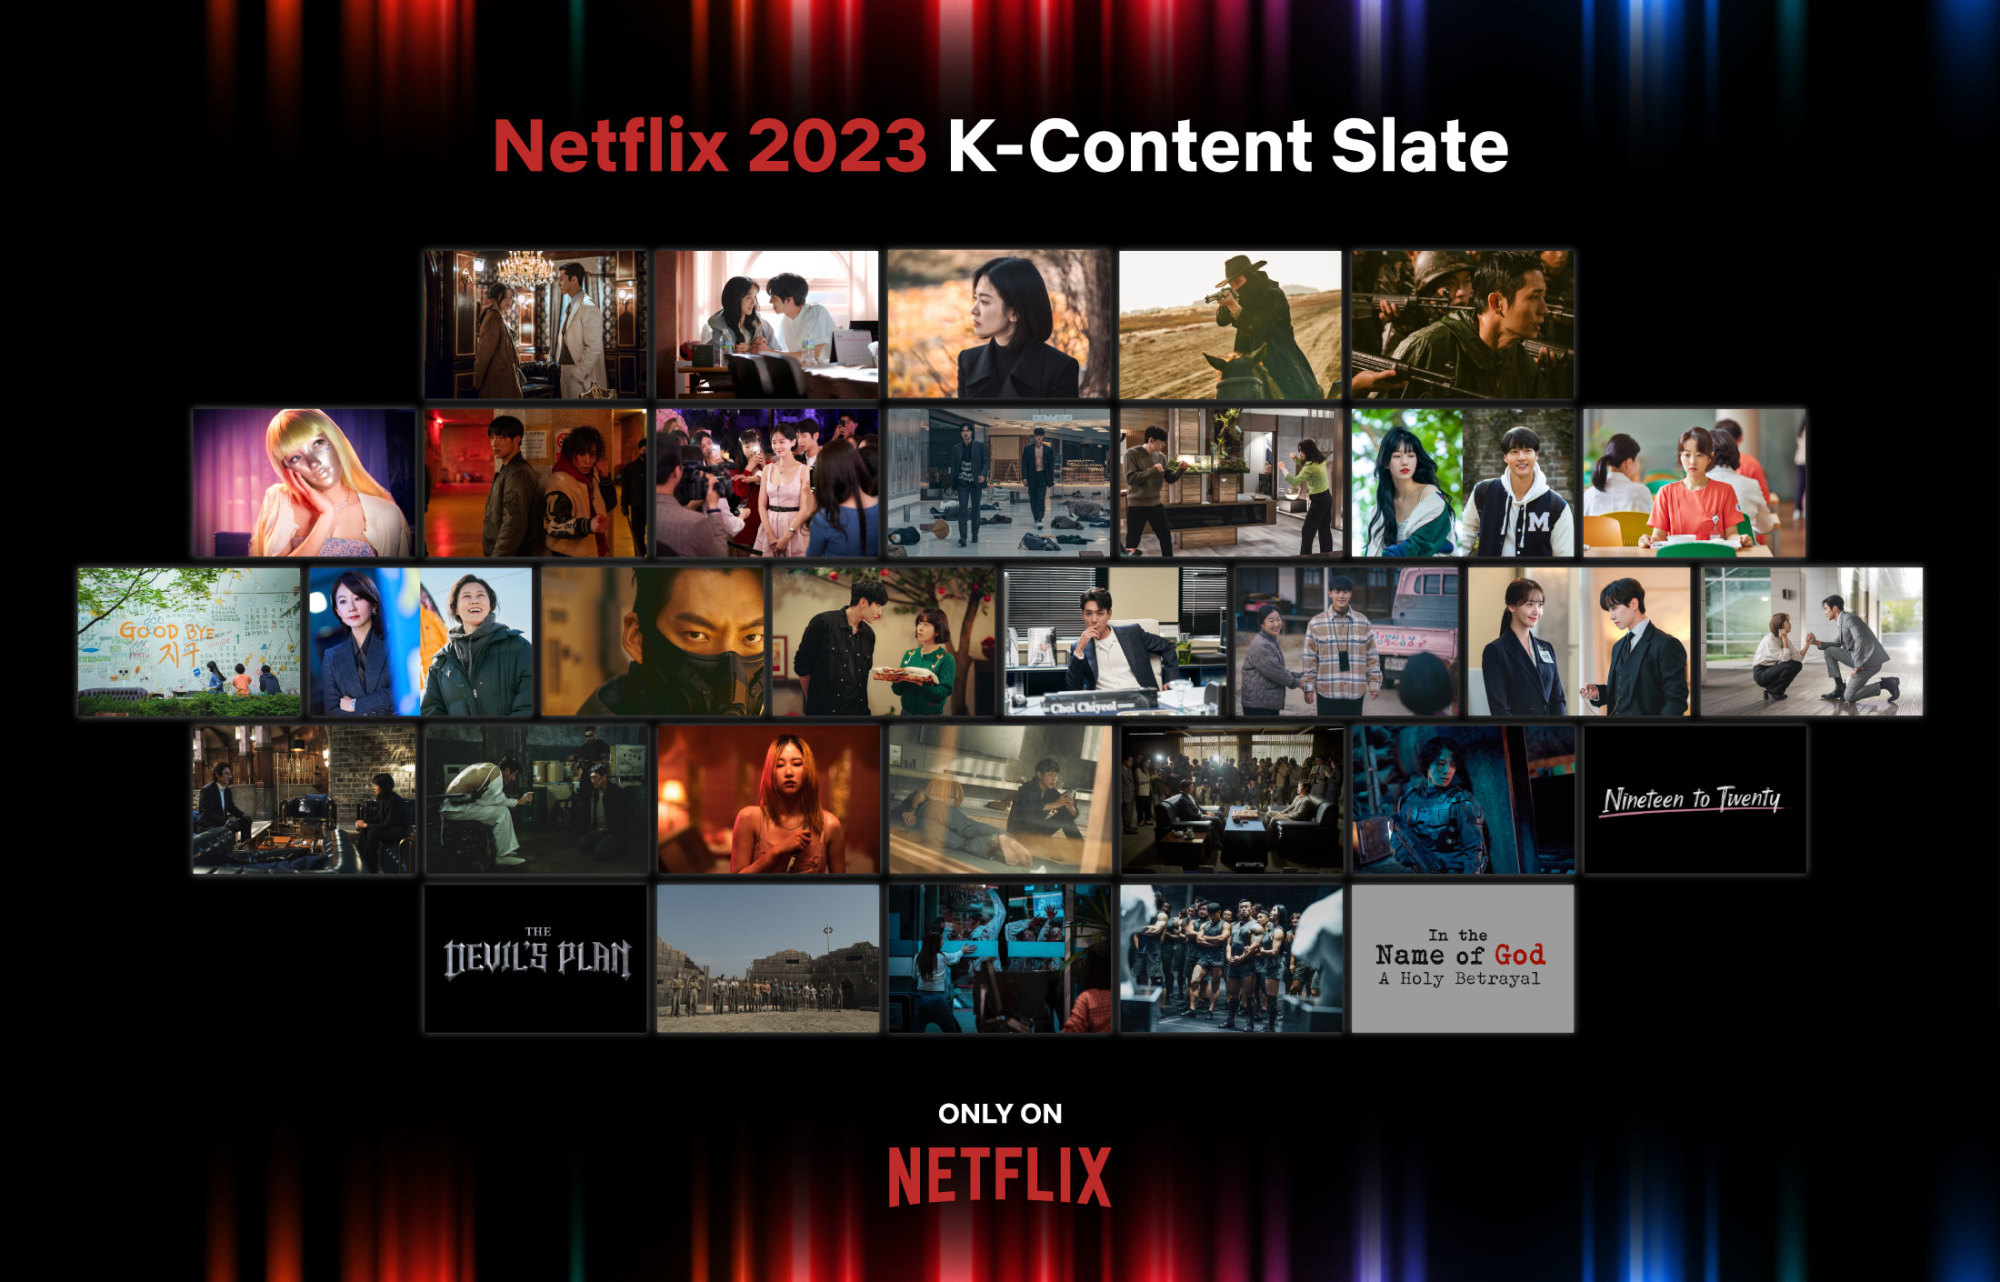 Novidade] Novos Kdramas no catálogo da Netflix